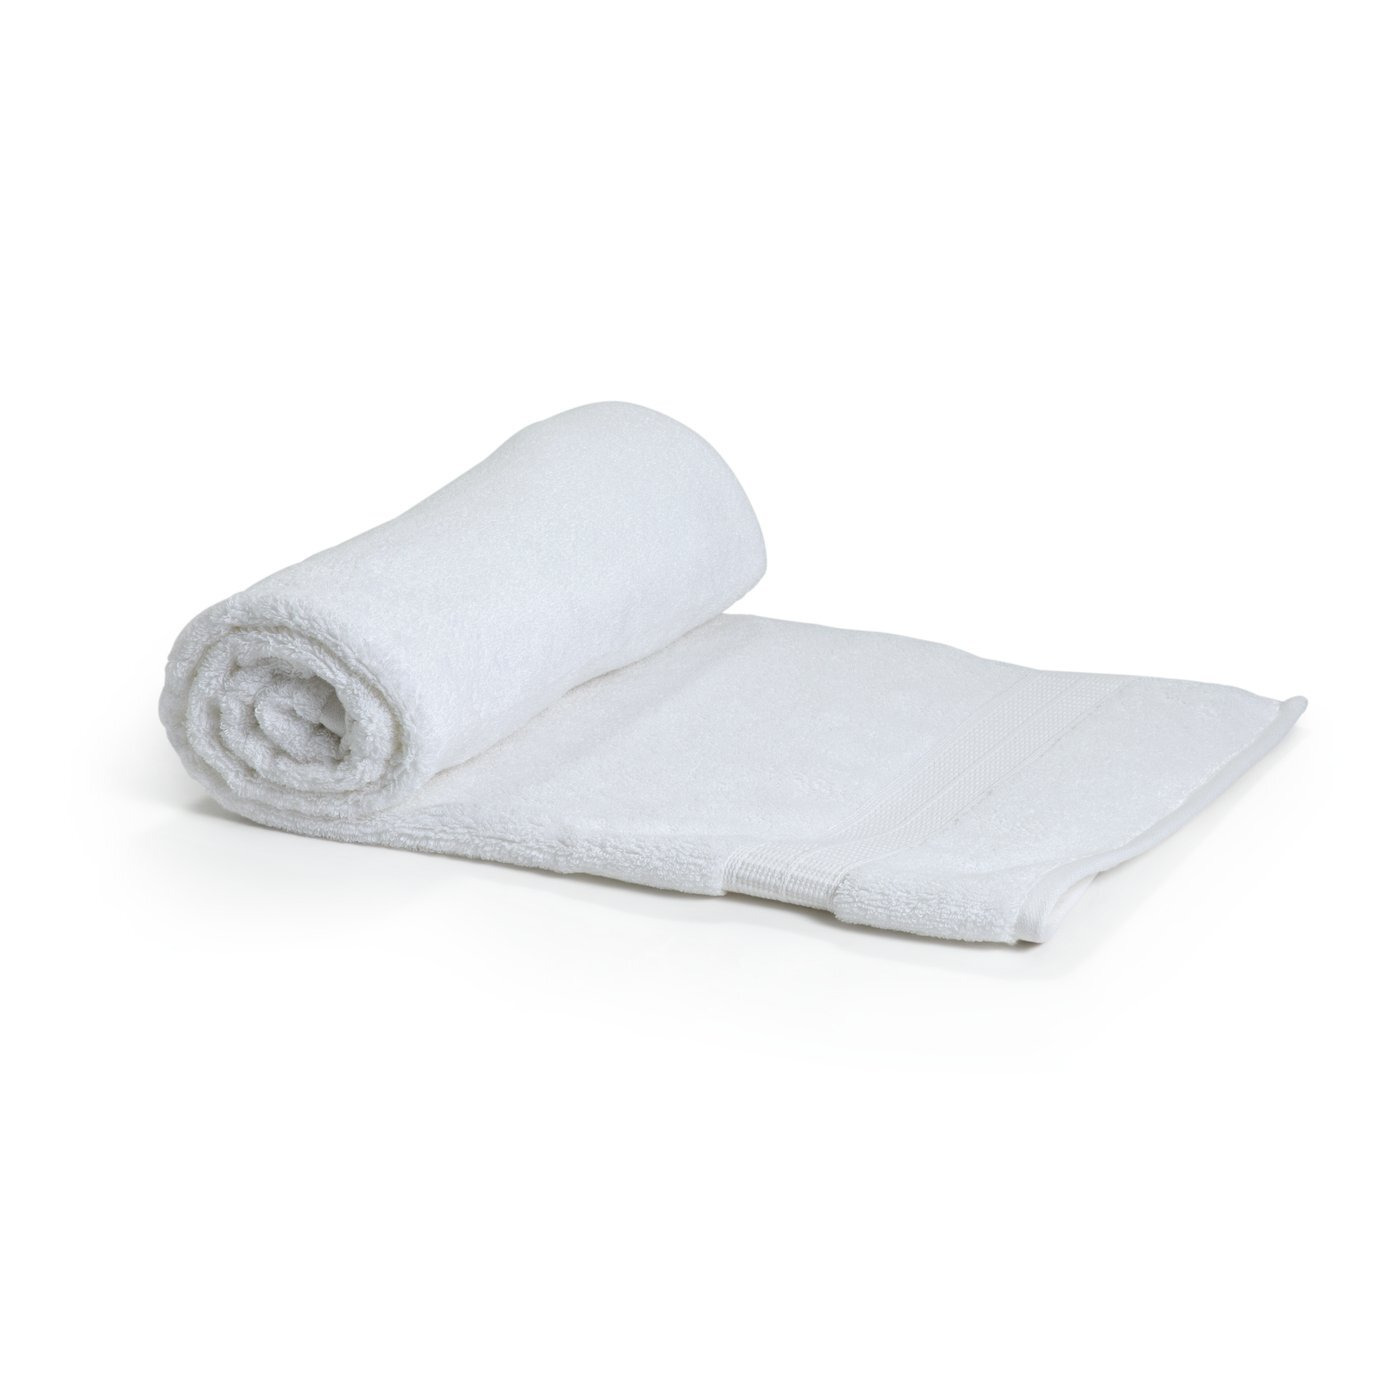 Habitat Luxury Lyocell Bath Towel - White - image 1